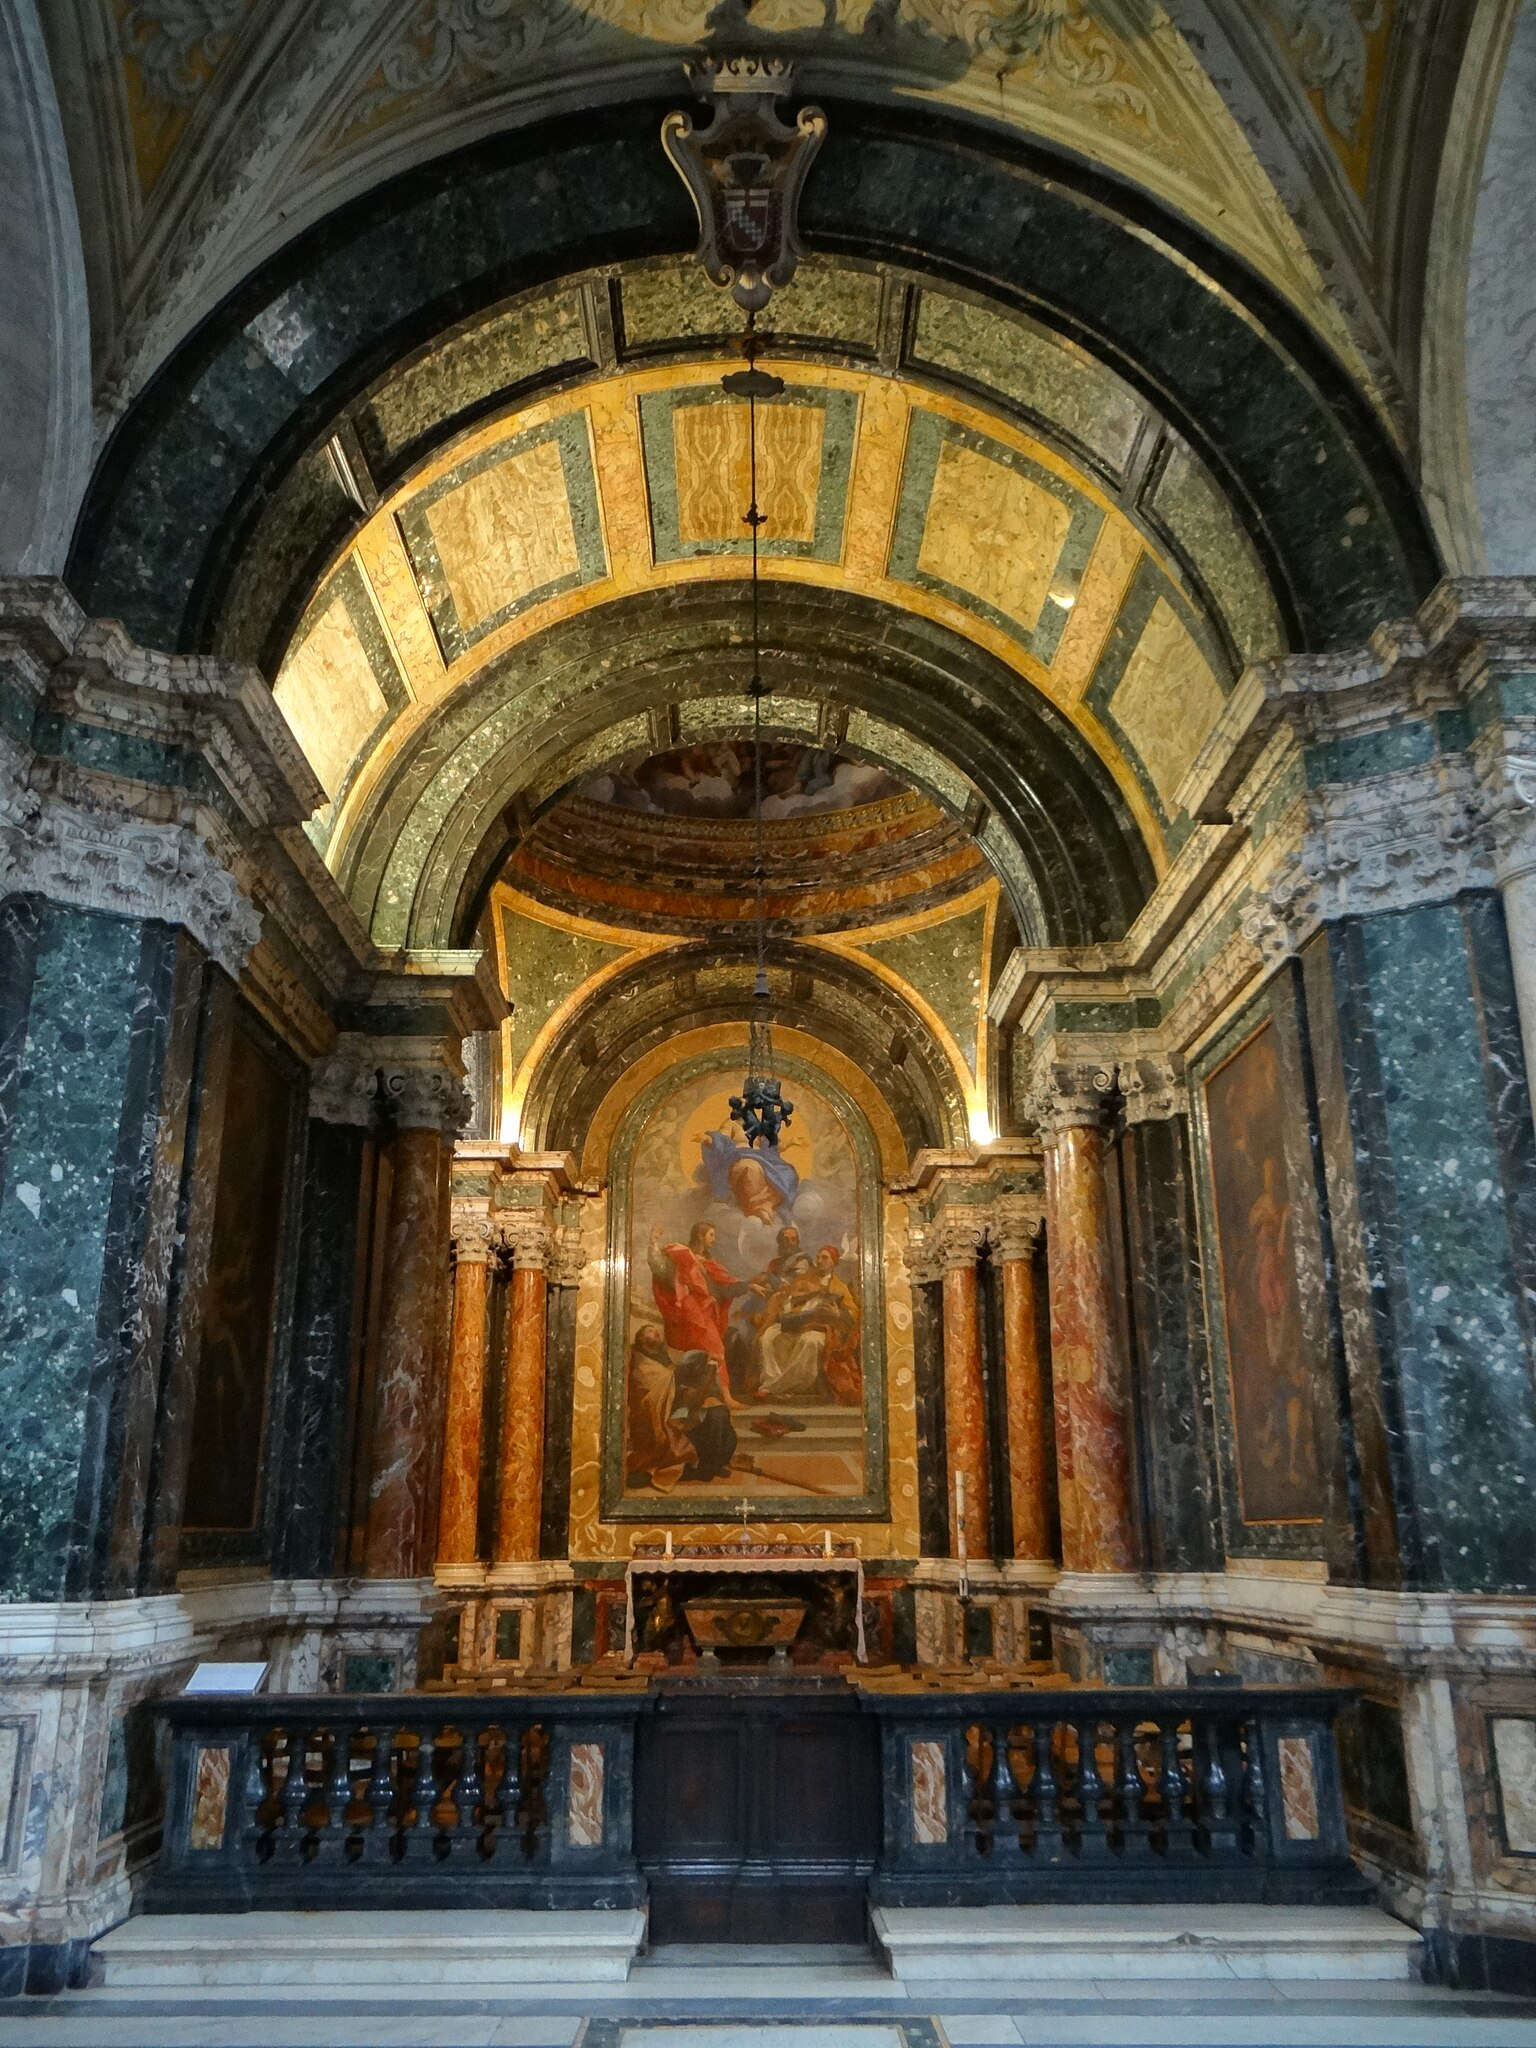 The Cybo Chapel in Santa Maria del Popolo. Photo: Wikimedia/Zello